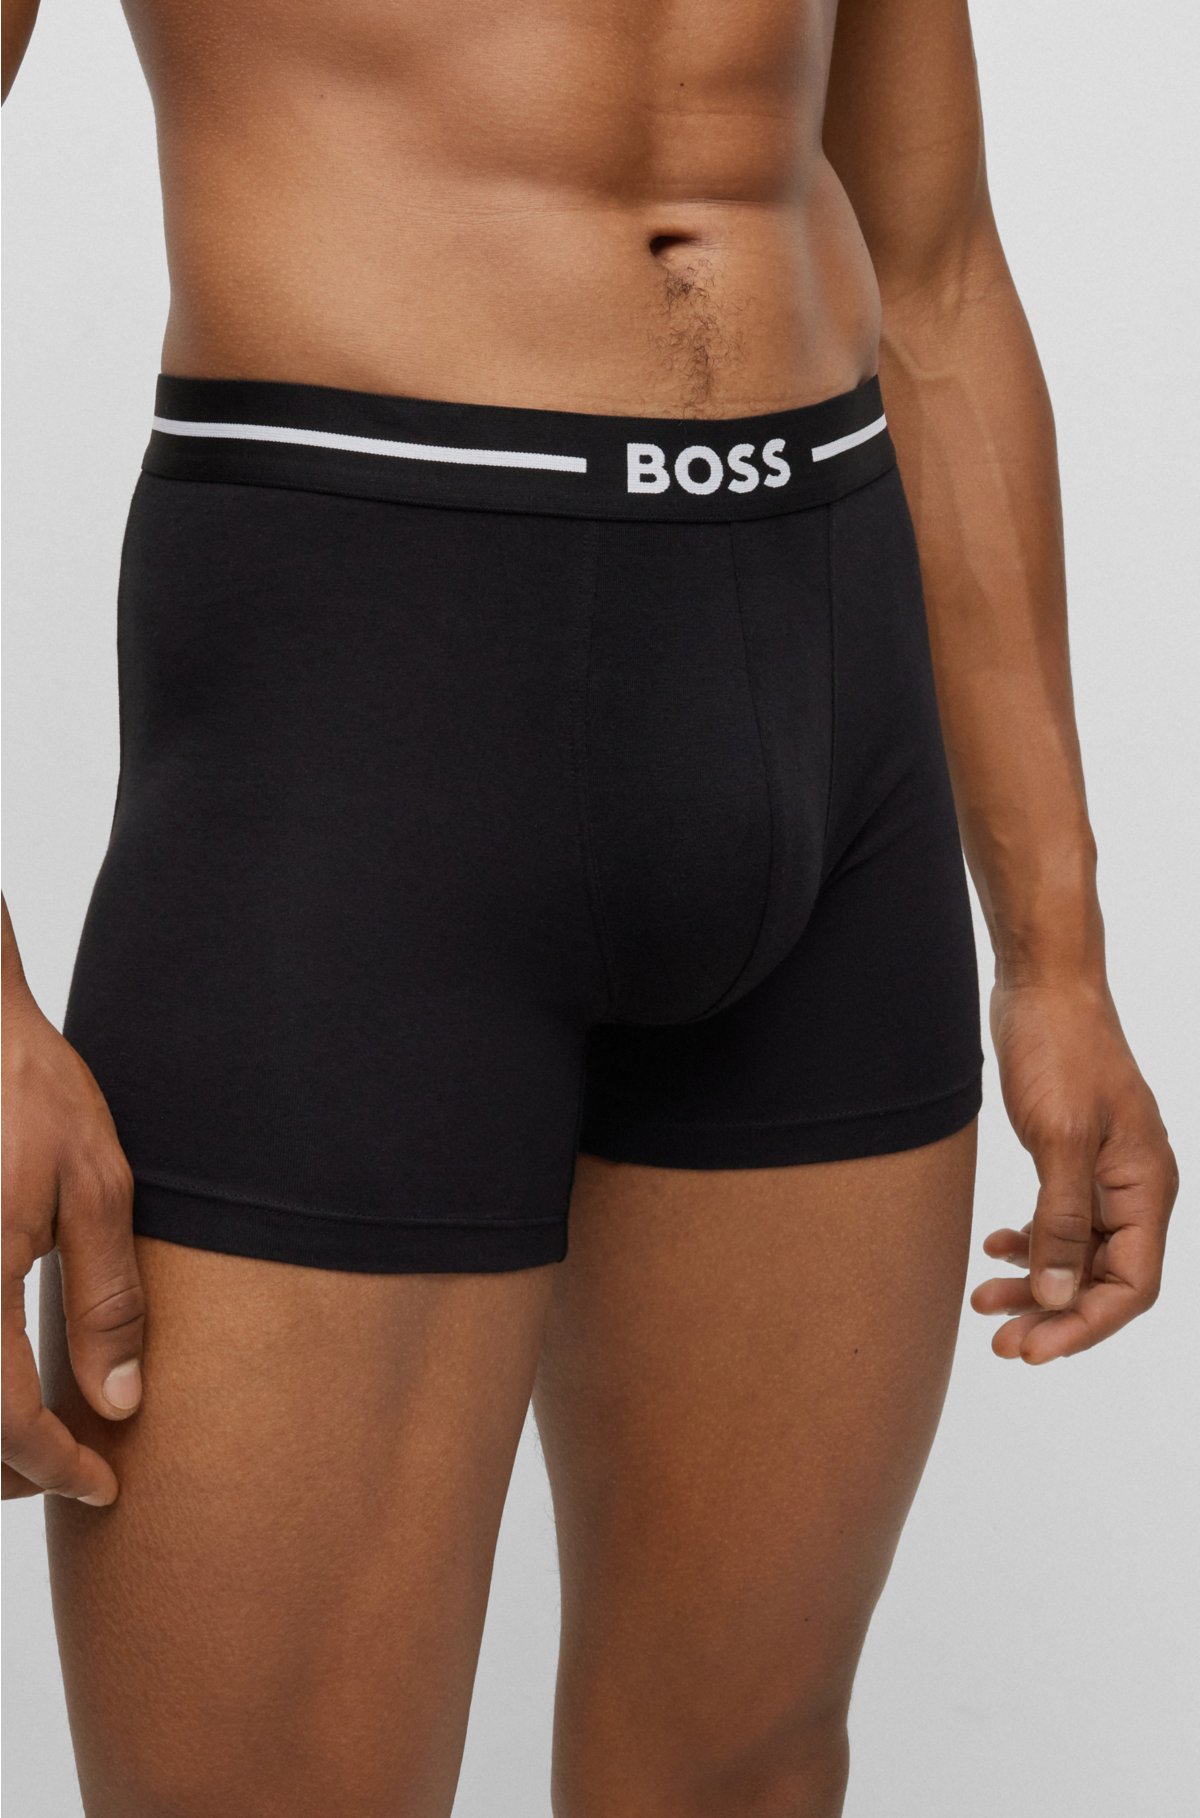 [Sonderverkaufsartikel] BOSS - of boxer briefs Three-pack with logo waistbands